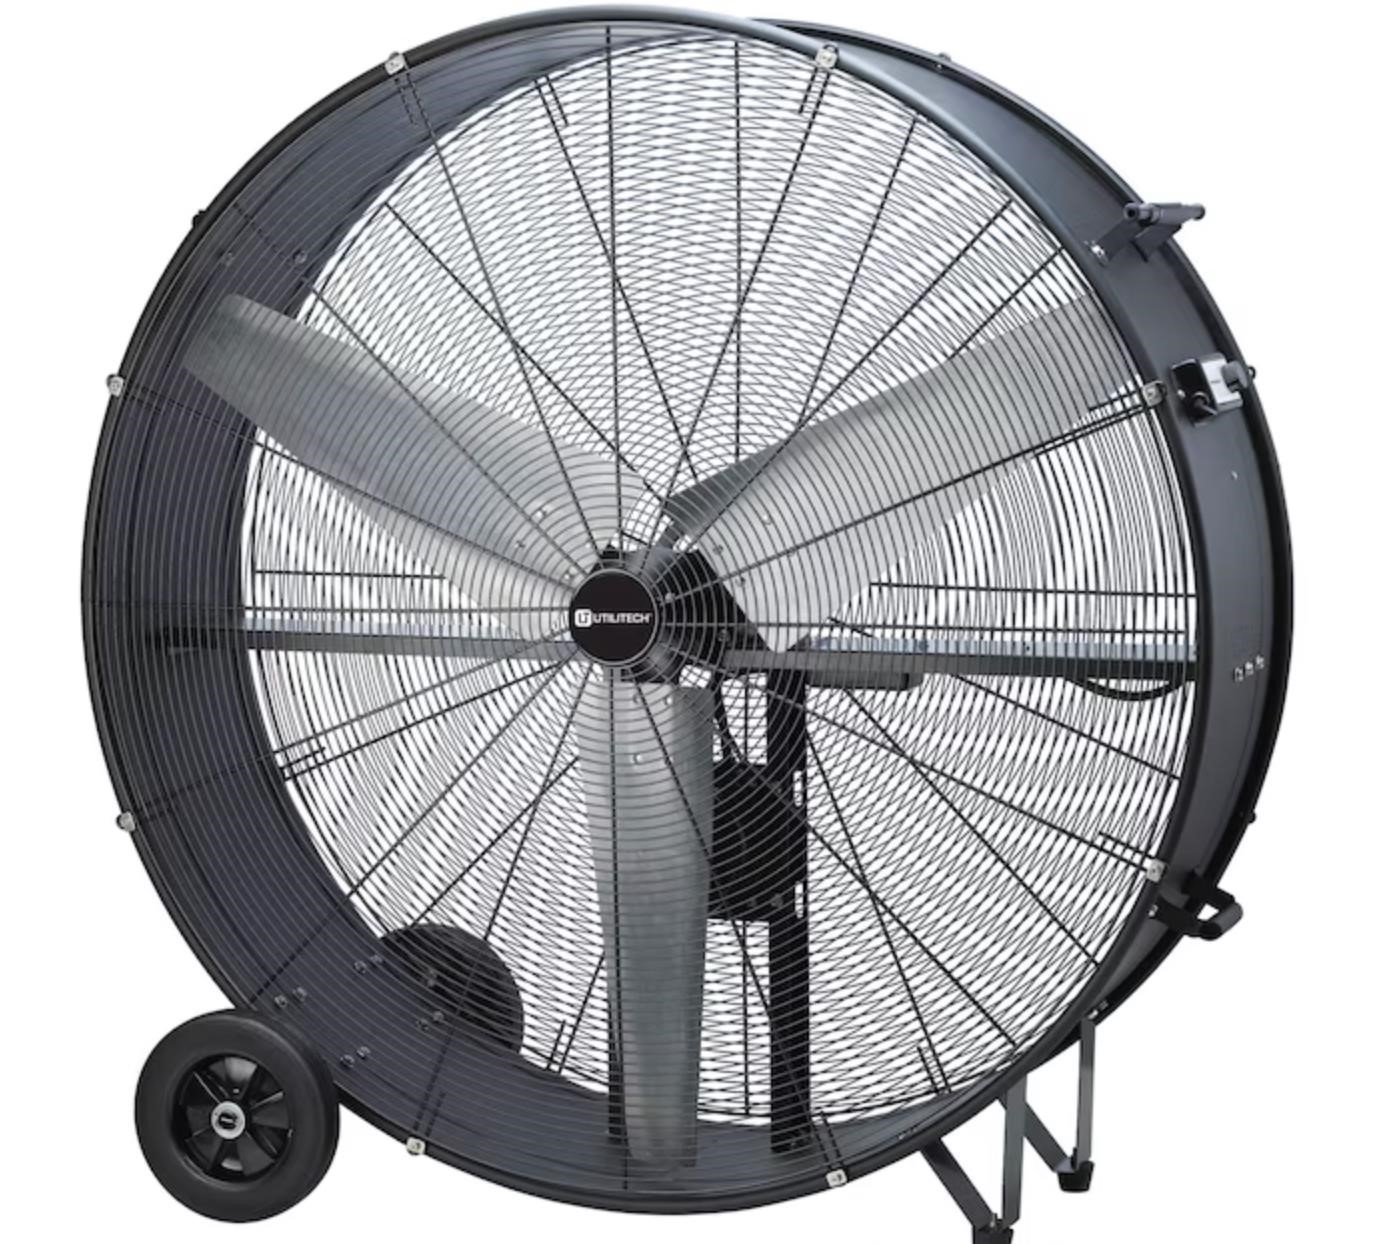 Utilitech 42-in 2-Speed Black Industrial Fan $400